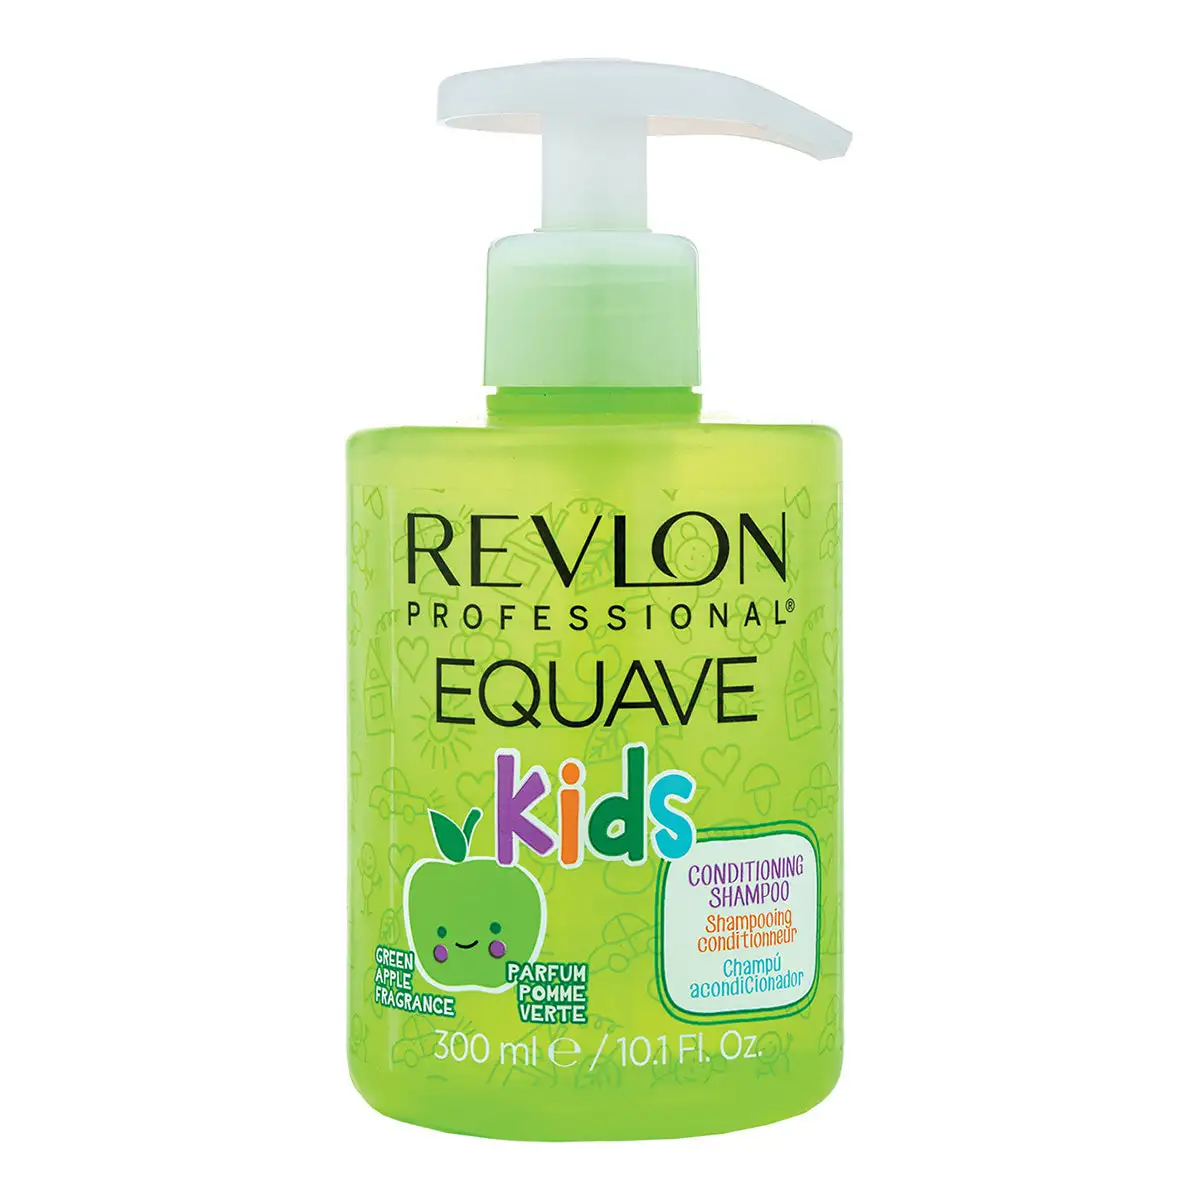 Revlon pro equave kids green apple conditioning shampoing 300ml_6985. DIAYTAR SENEGAL - L'Art de Vivre avec Authenticité. Explorez notre gamme de produits artisanaux et découvrez des articles qui apportent une touche unique à votre vie.